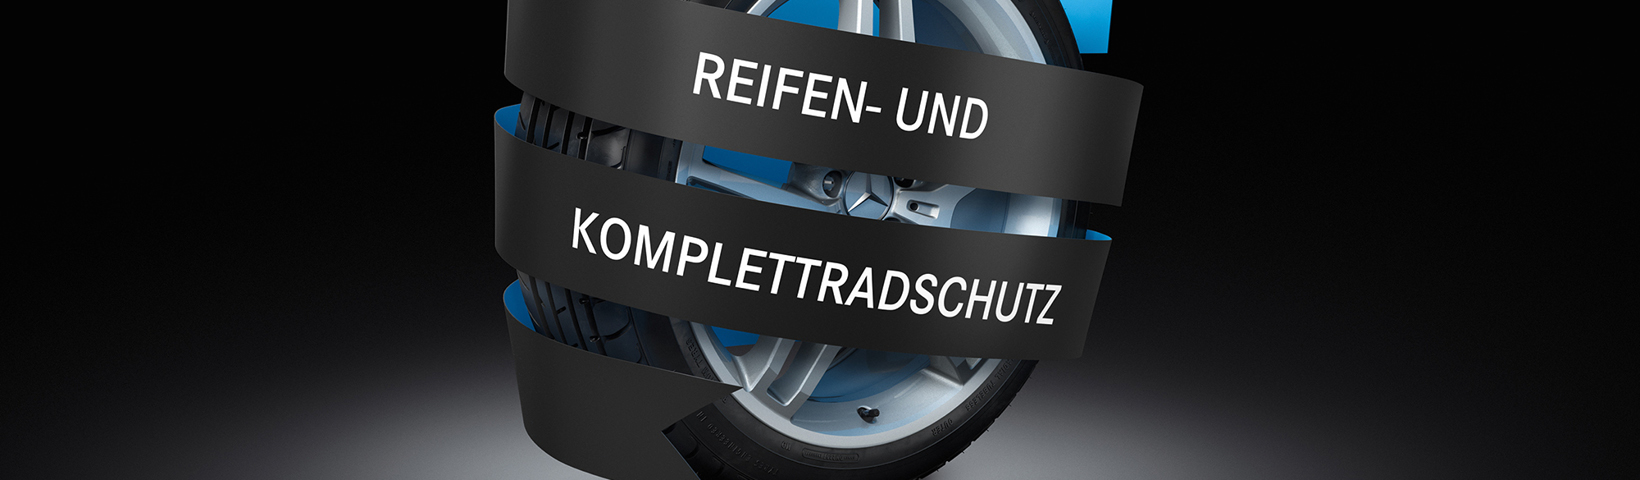  Header_Bild_Reifen-Komplettradschutz_RGB_1640_x_480.jpg